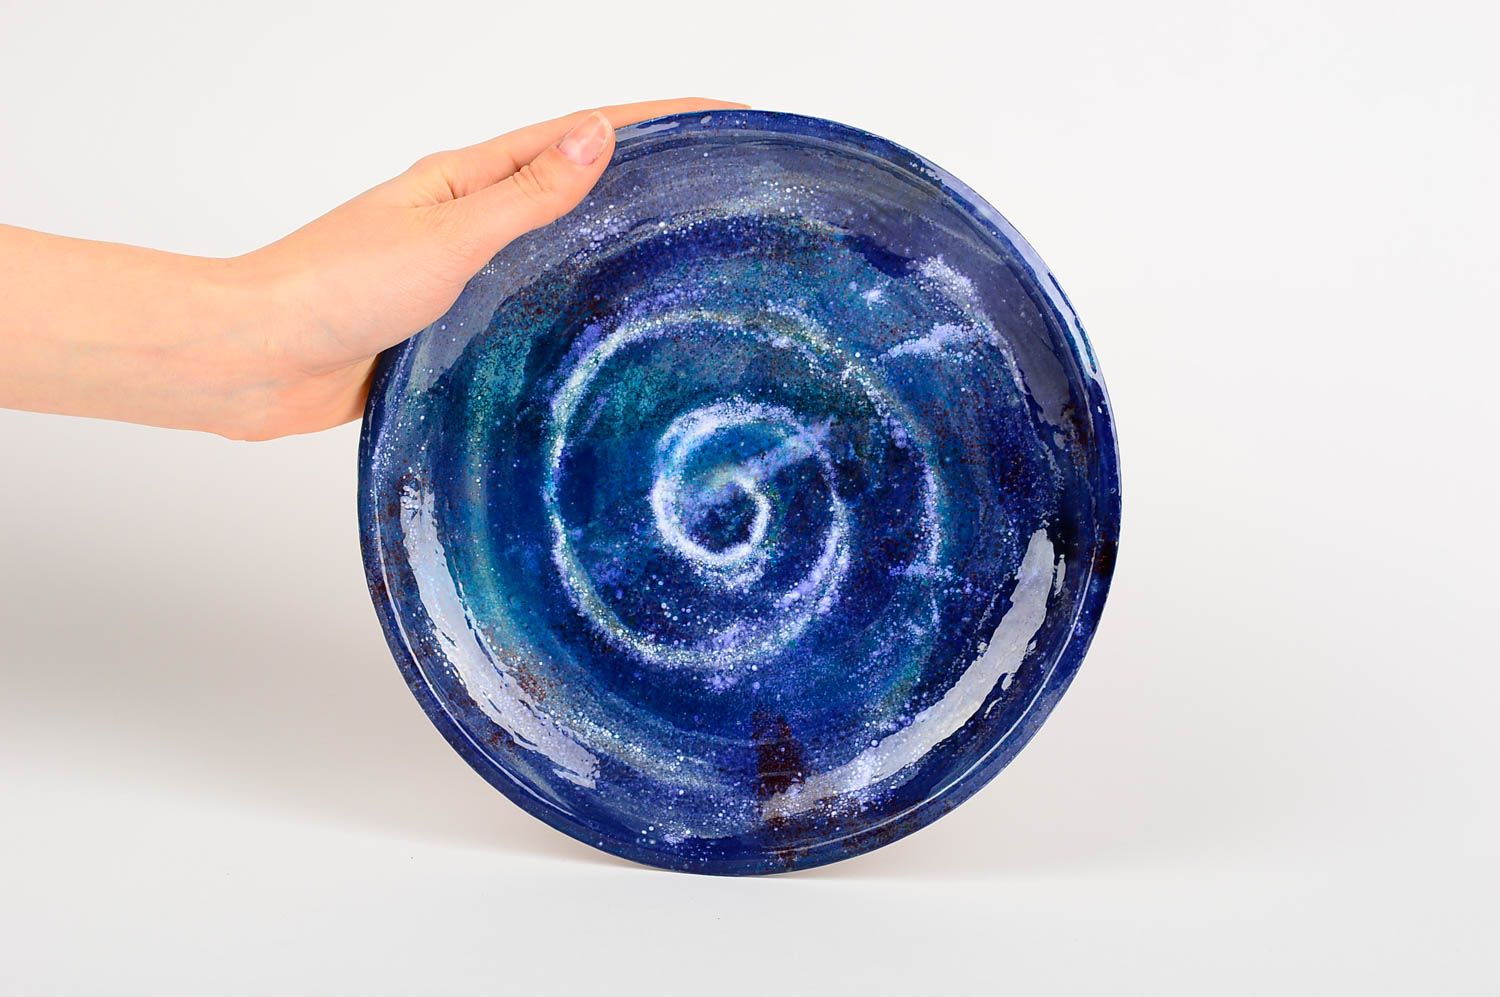 Handgemachter Keramik Teller Geschenk Idee Teller aus Ton schöner Teller blau foto 2